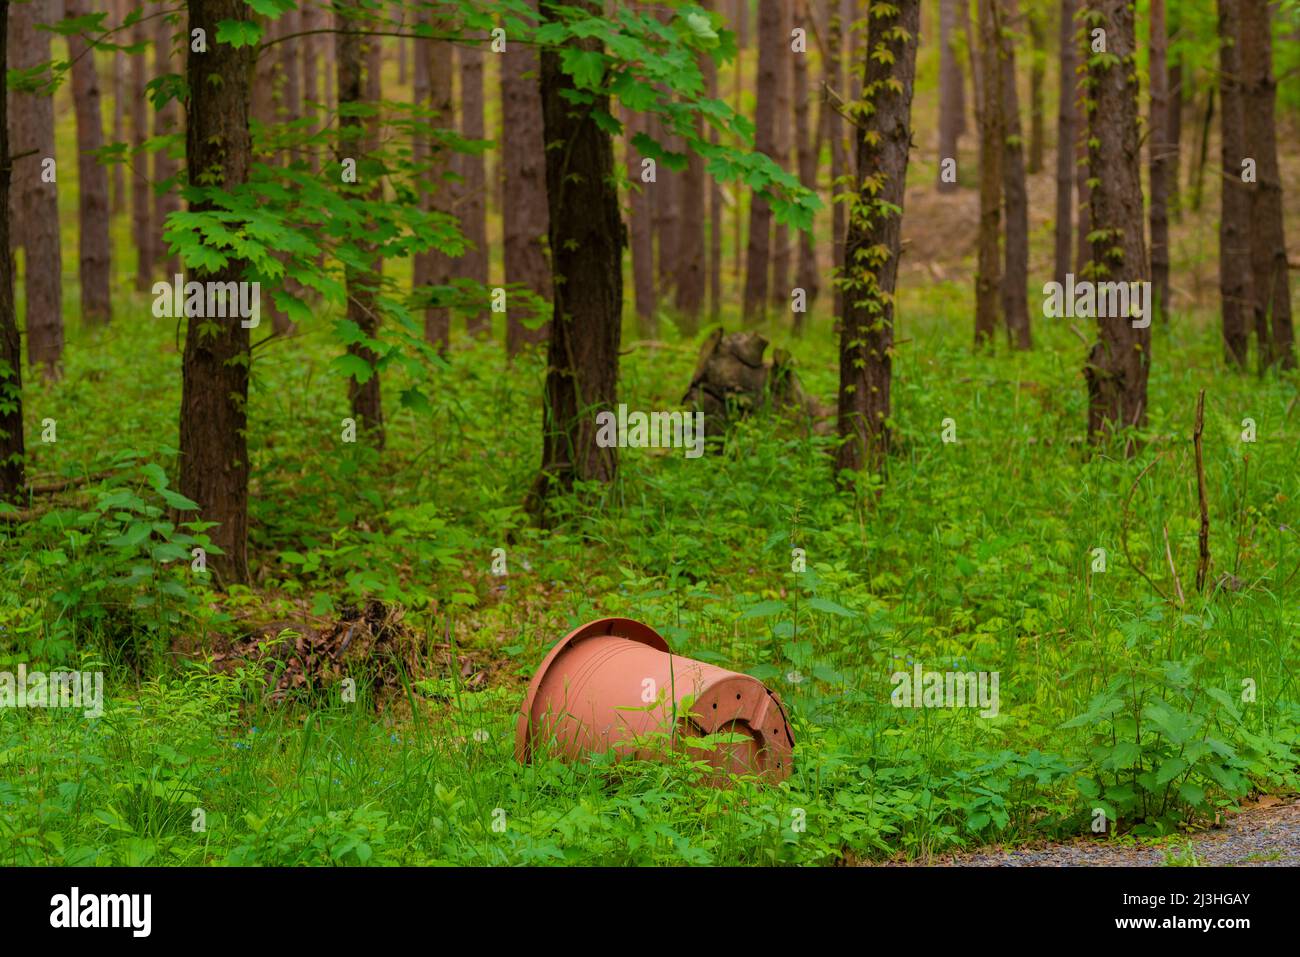 Verschmutzung, illegal entsorgen Kunststoff-Blumentopf in einem Wald, Gartenabfälle Stockfoto